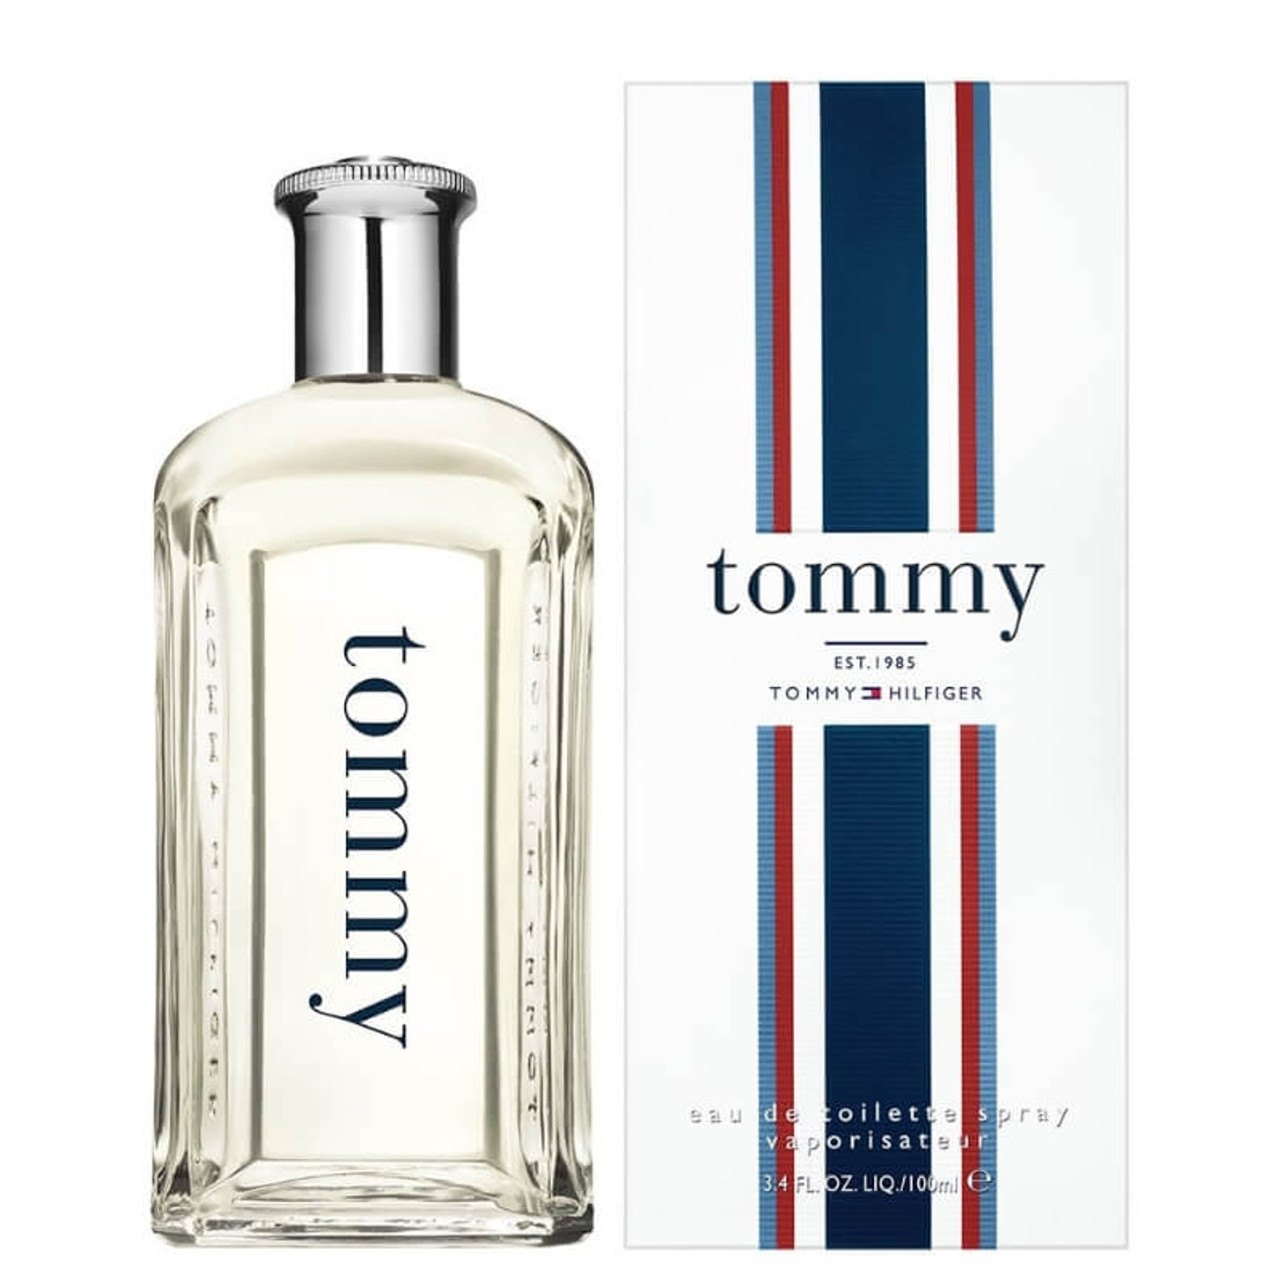  Tommy Hilfiger for Men Eau de Cologne Spray, 3.4 Oz : TOMMY  HILFIGER: Beauty & Personal Care